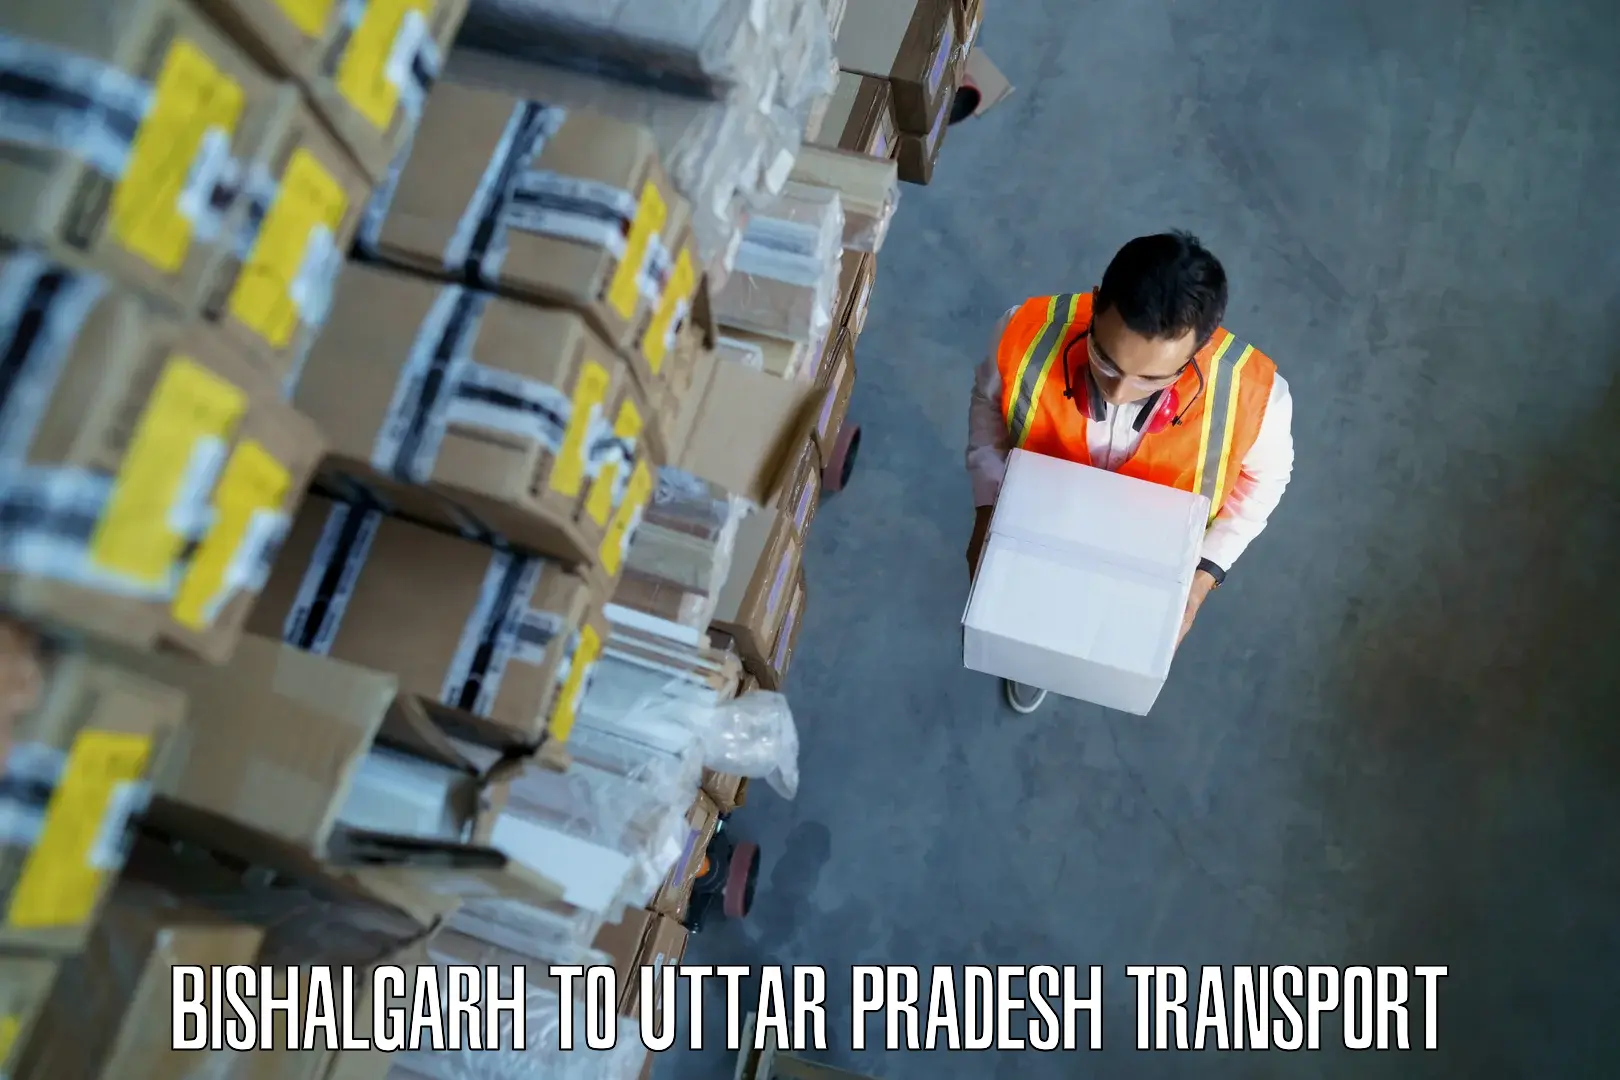 Interstate transport services Bishalgarh to IIT Kanpur